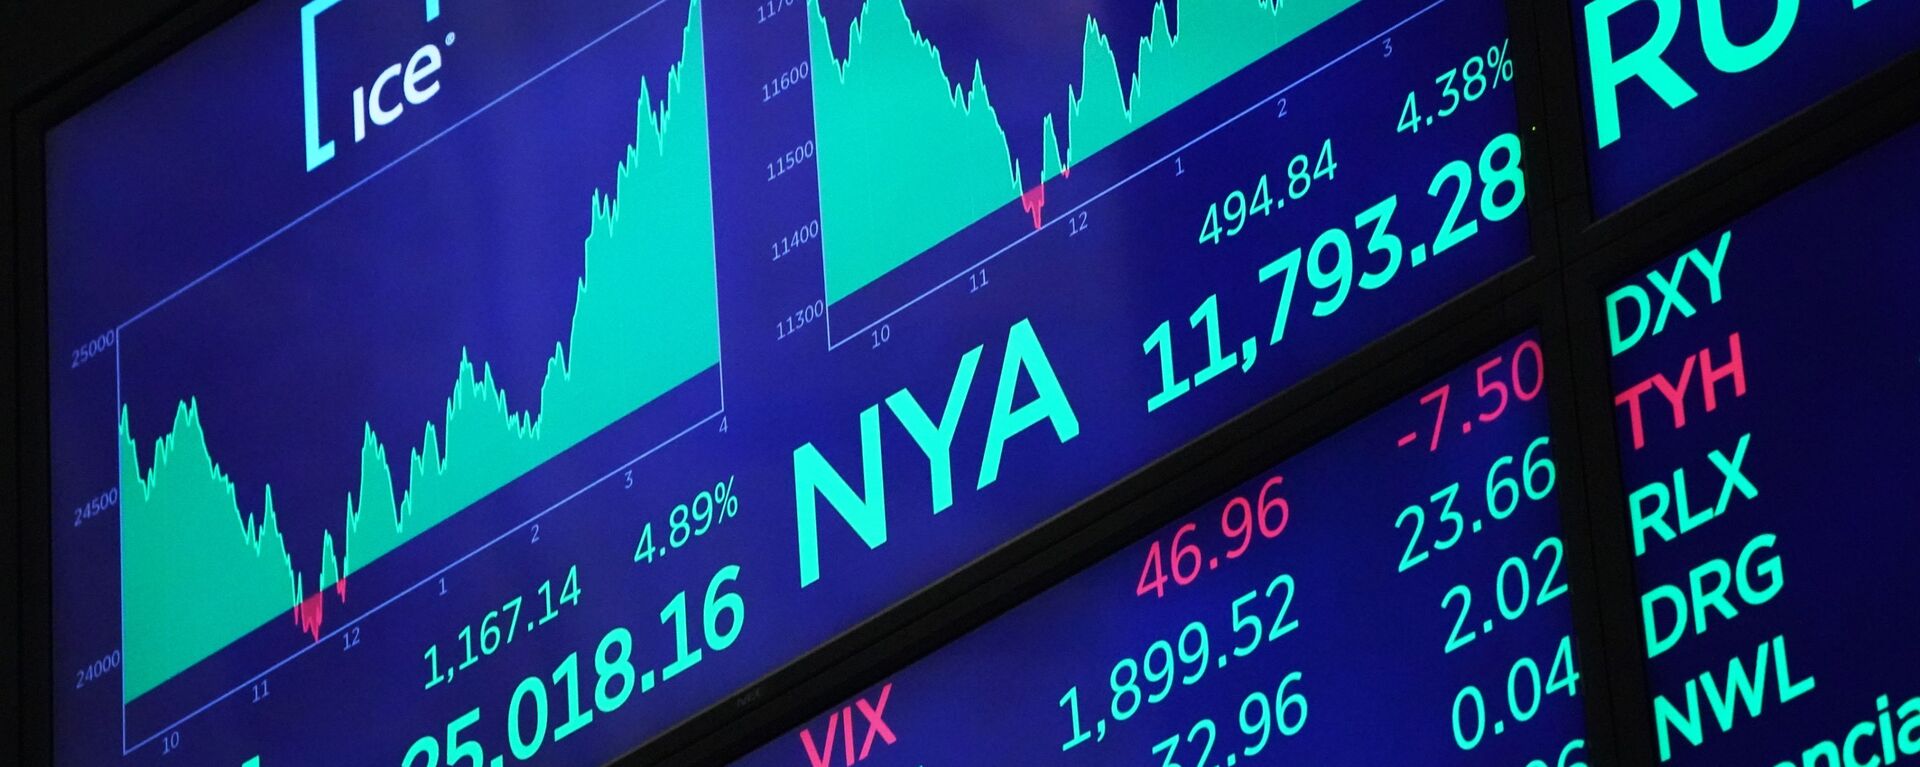 Табло с индексами котировок в зале Нью-Йоркской фондовой биржи - Sputnik Молдова, 1920, 07.02.2021